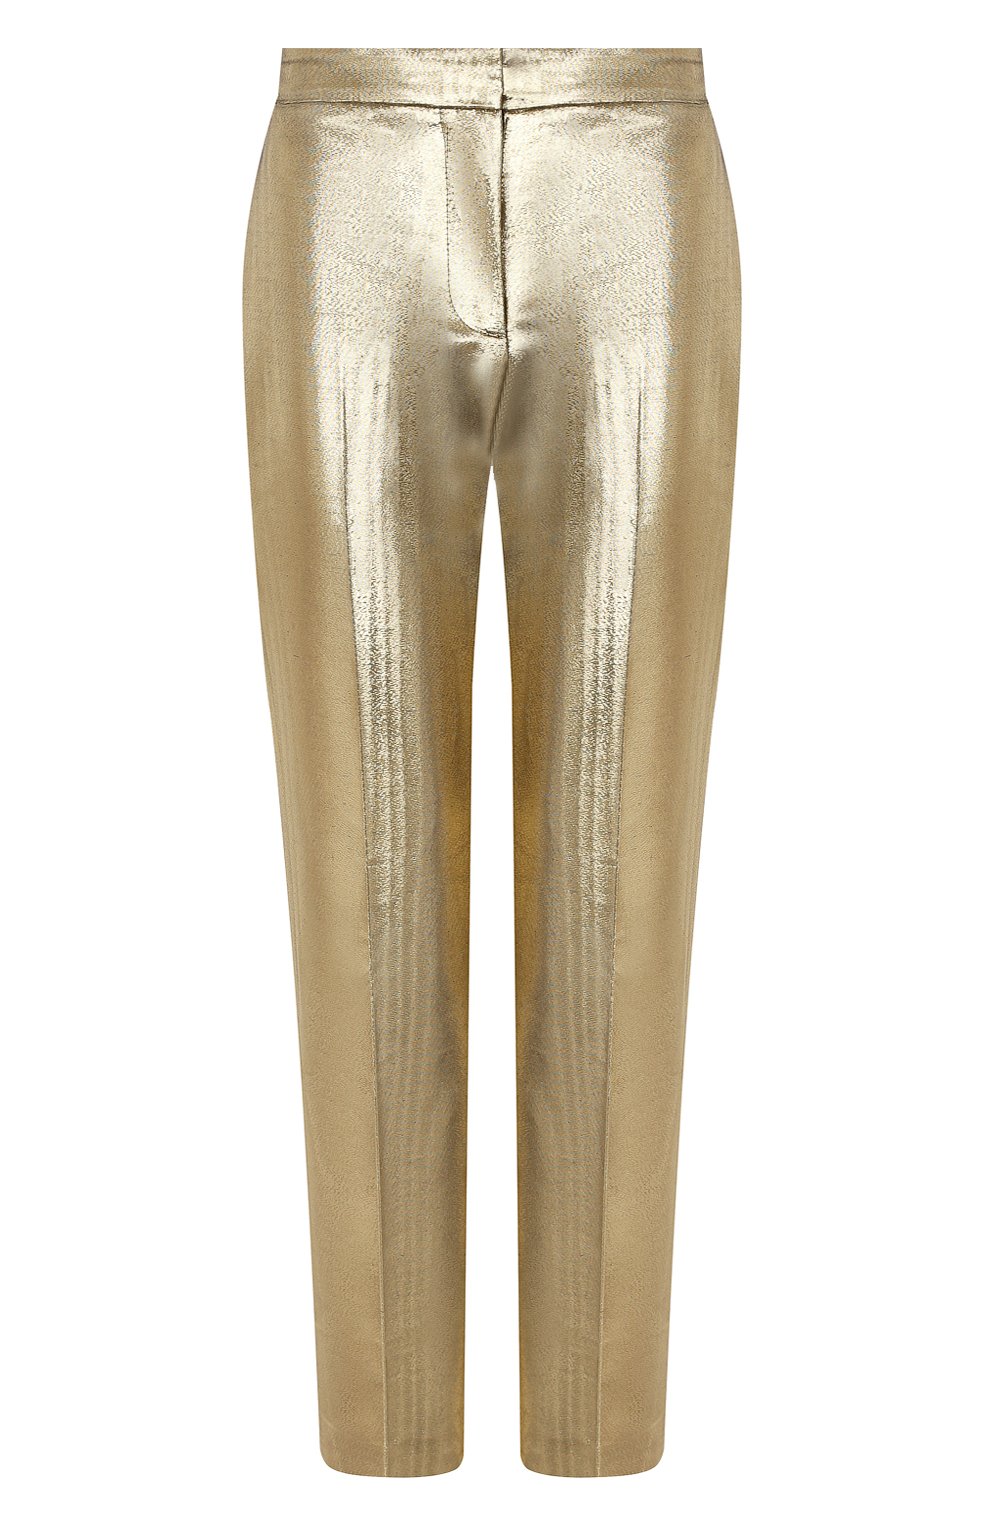 Женские брюки из хлопка и шелка ALEXANDER MCQUEEN золотого цвета, арт. 631818/QEACC | Фото 1 (Материал внешний: Шелк, Хлопок; Длина (брюки, джинсы): Стандартные; Женское Кросс-КТ: Брюки-одежда; Силуэт Ж (брюки и джинсы): Прямые; Материал подклада: Купро)